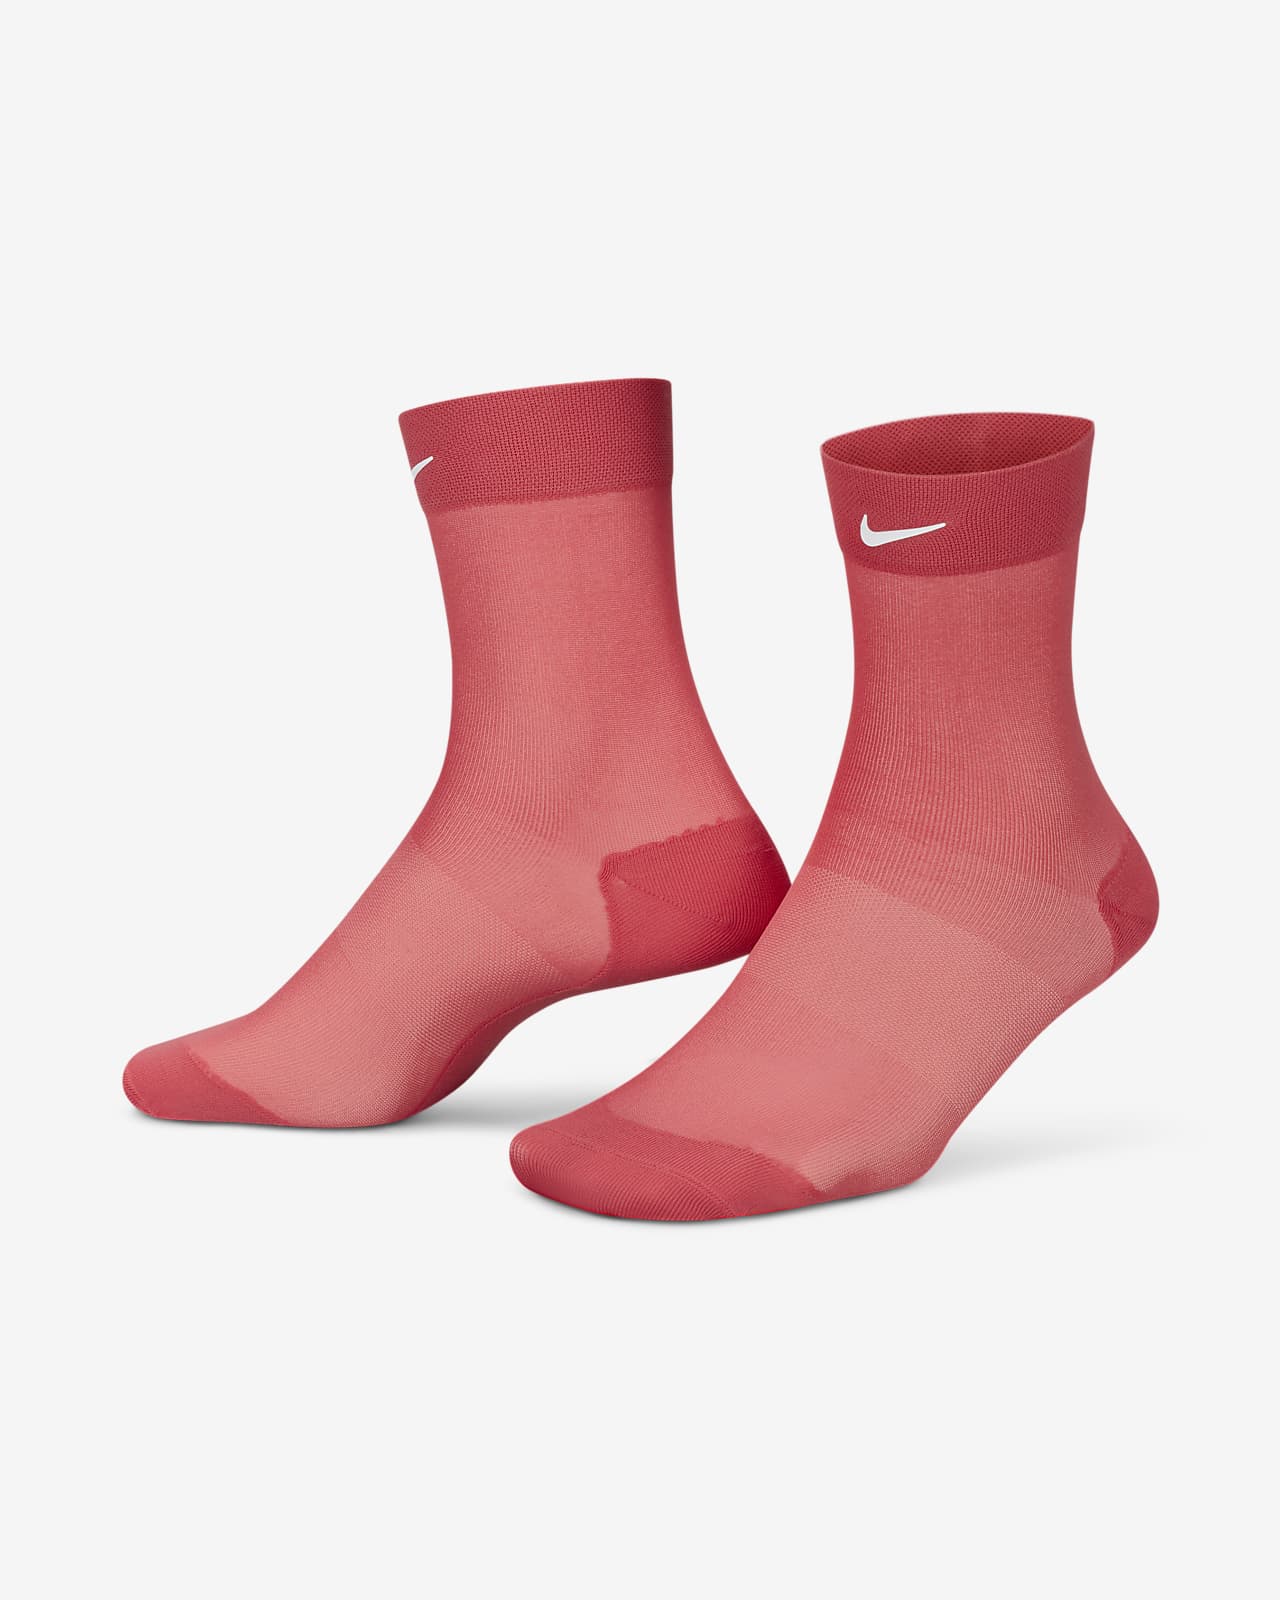 Nike Women's Sheer Ankle Socks (2 Pairs)